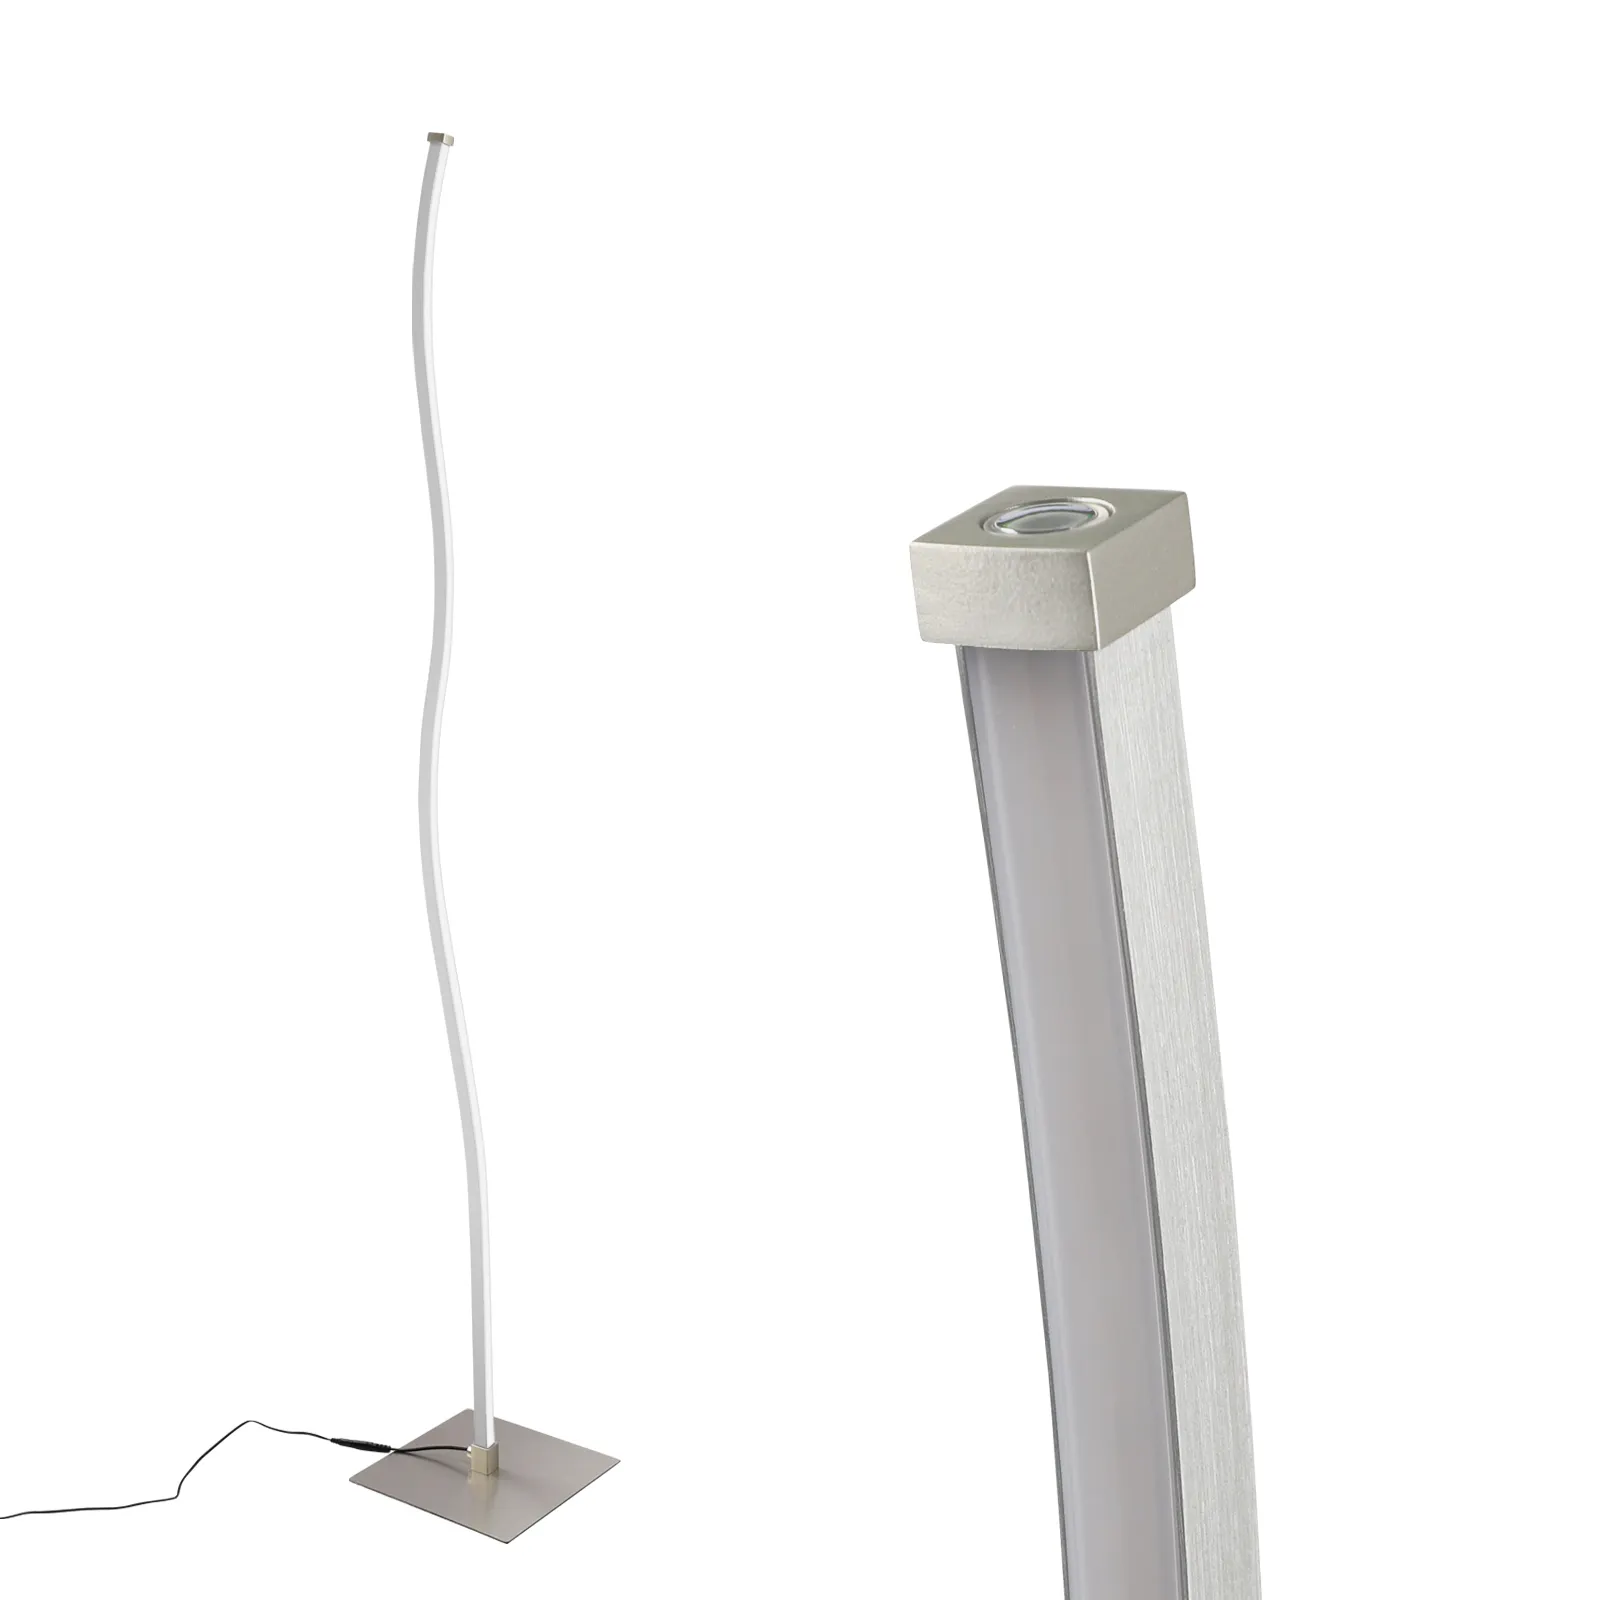 light luxury modern floor lighting warm white Stainless steel vertical corner lamp standing led living room stand floor lamp